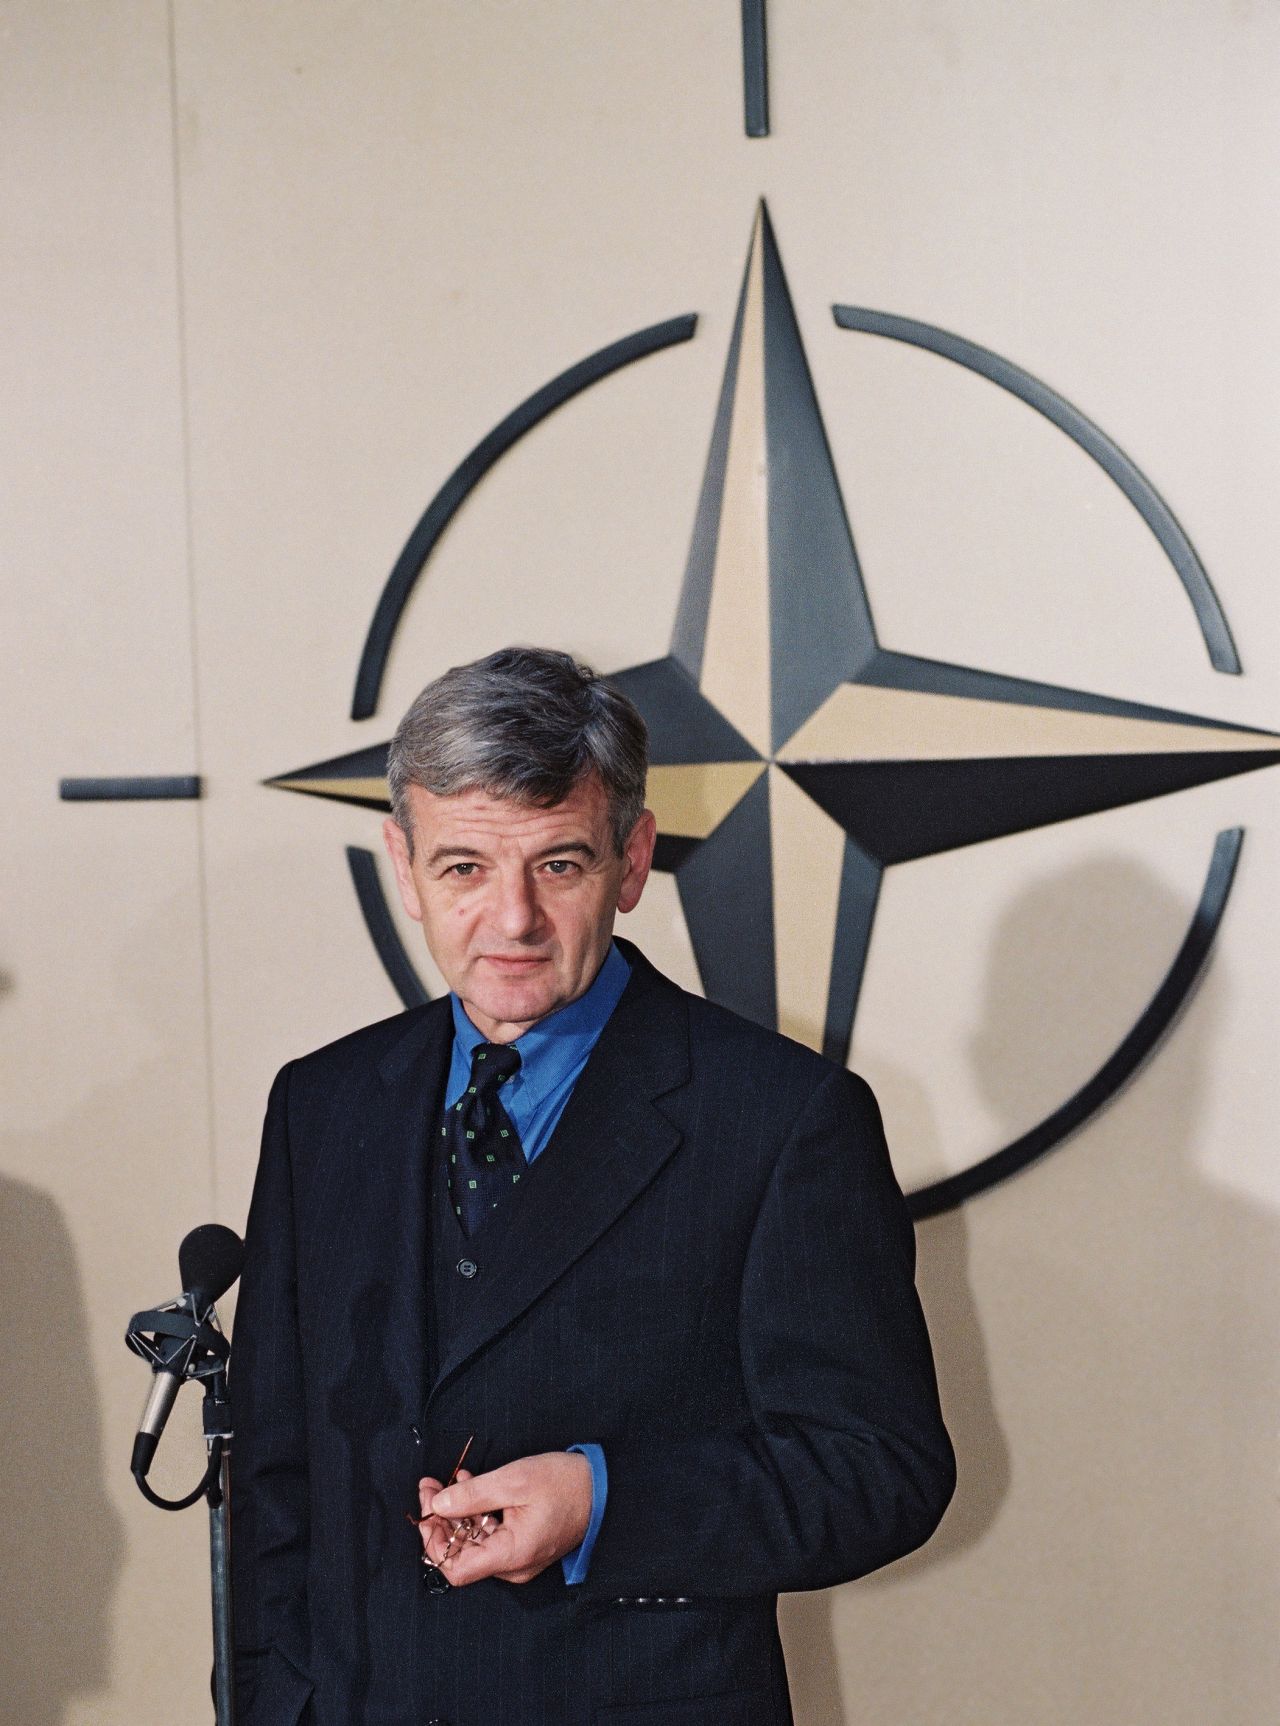 Ο Γιόσκα Φίσερ, τότε ηγέτης των «Πρασίνων», Αντικαγκελάριος και Υπουργός Εξωτερικών της Γερμανίας, το 1998 στα κεντρικά γραφεία του ΝΑΤΟ. Ήταν λίγο πριν ο ιμπεριαλιστικός οργανισμός, με την ενεργό συμμετοχή και της Γερμανίας, ξεκινήσει το «οικολογικό» του έργο στη Γιουγκοσλαβία, που περιελάμβανε και τη ρίψη 35.000 βομβών καρκινογόνου απεμπλουτισμένου ουρανίου, η ραδιενέργεια του οποίου θα χρειαστεί 4-5 δισεκατομμύρια χρόνια για να πέσει στο μισό.